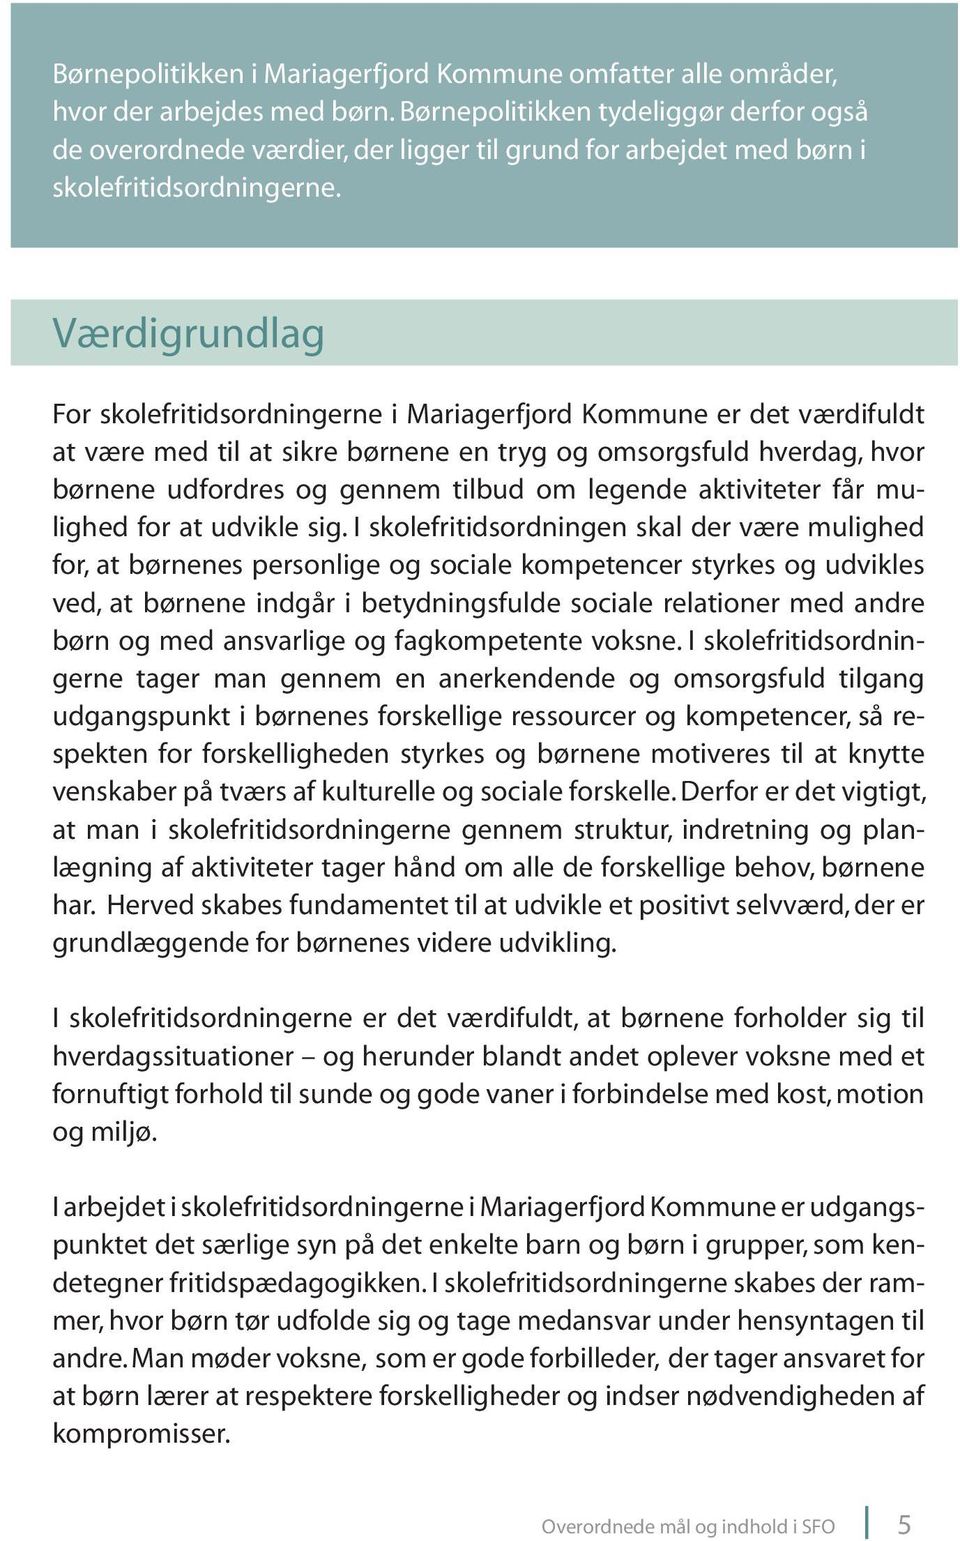 Værdigrundlag For skolefritidsordningerne i Mariagerfjord Kommune er det værdifuldt at være med til at sikre børnene en tryg og omsorgsfuld hverdag, hvor børnene udfordres og gennem tilbud om legende